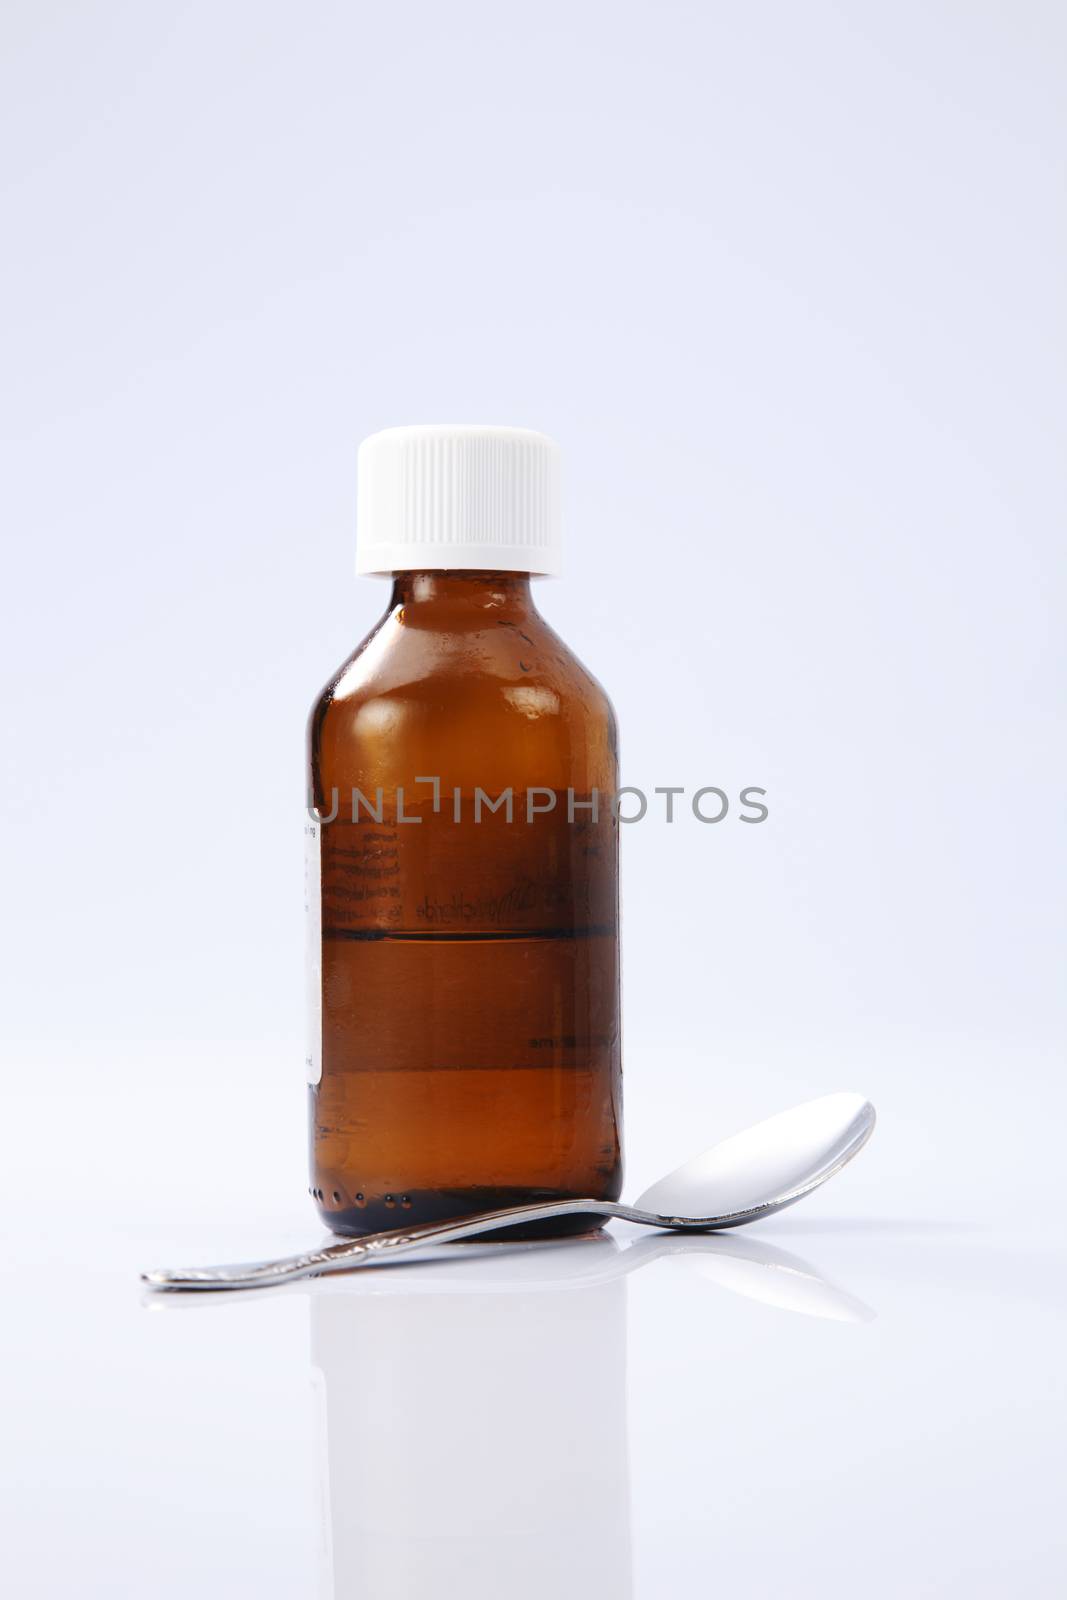 liquid medicine in the brown bottle